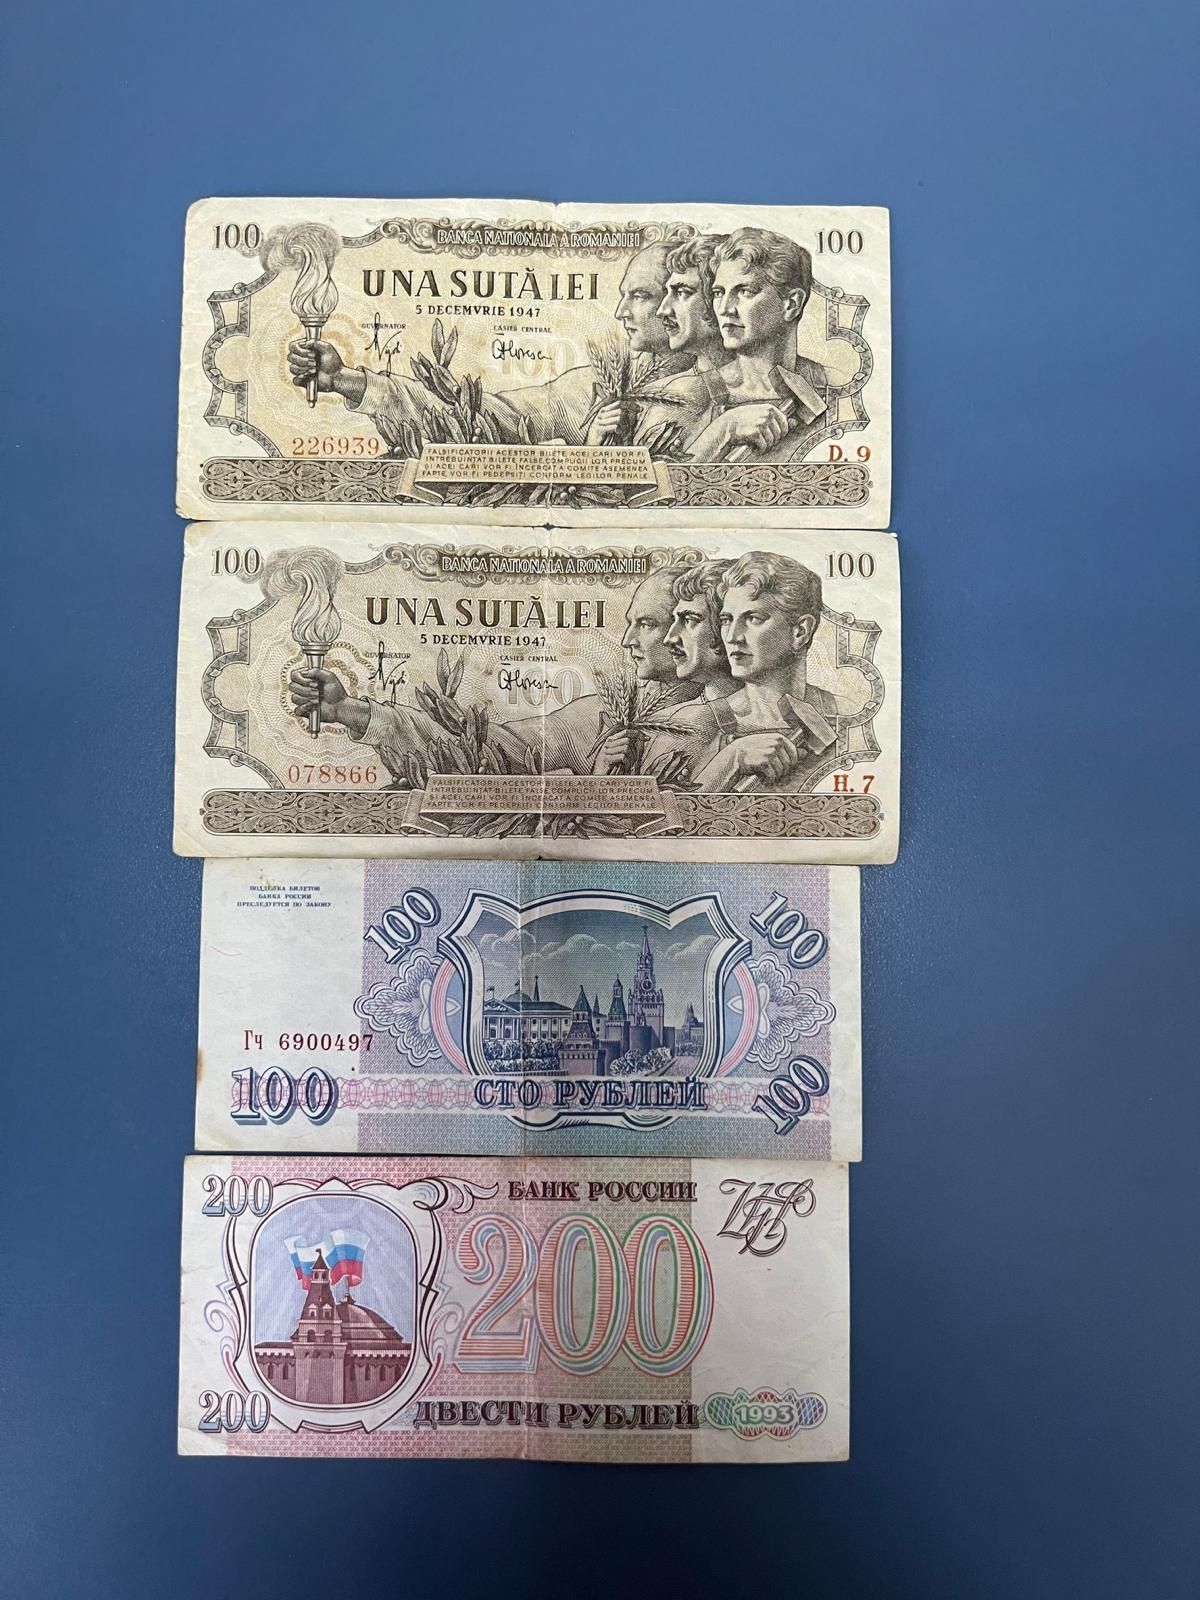 Vând bancnotă vechi românești una suta lei